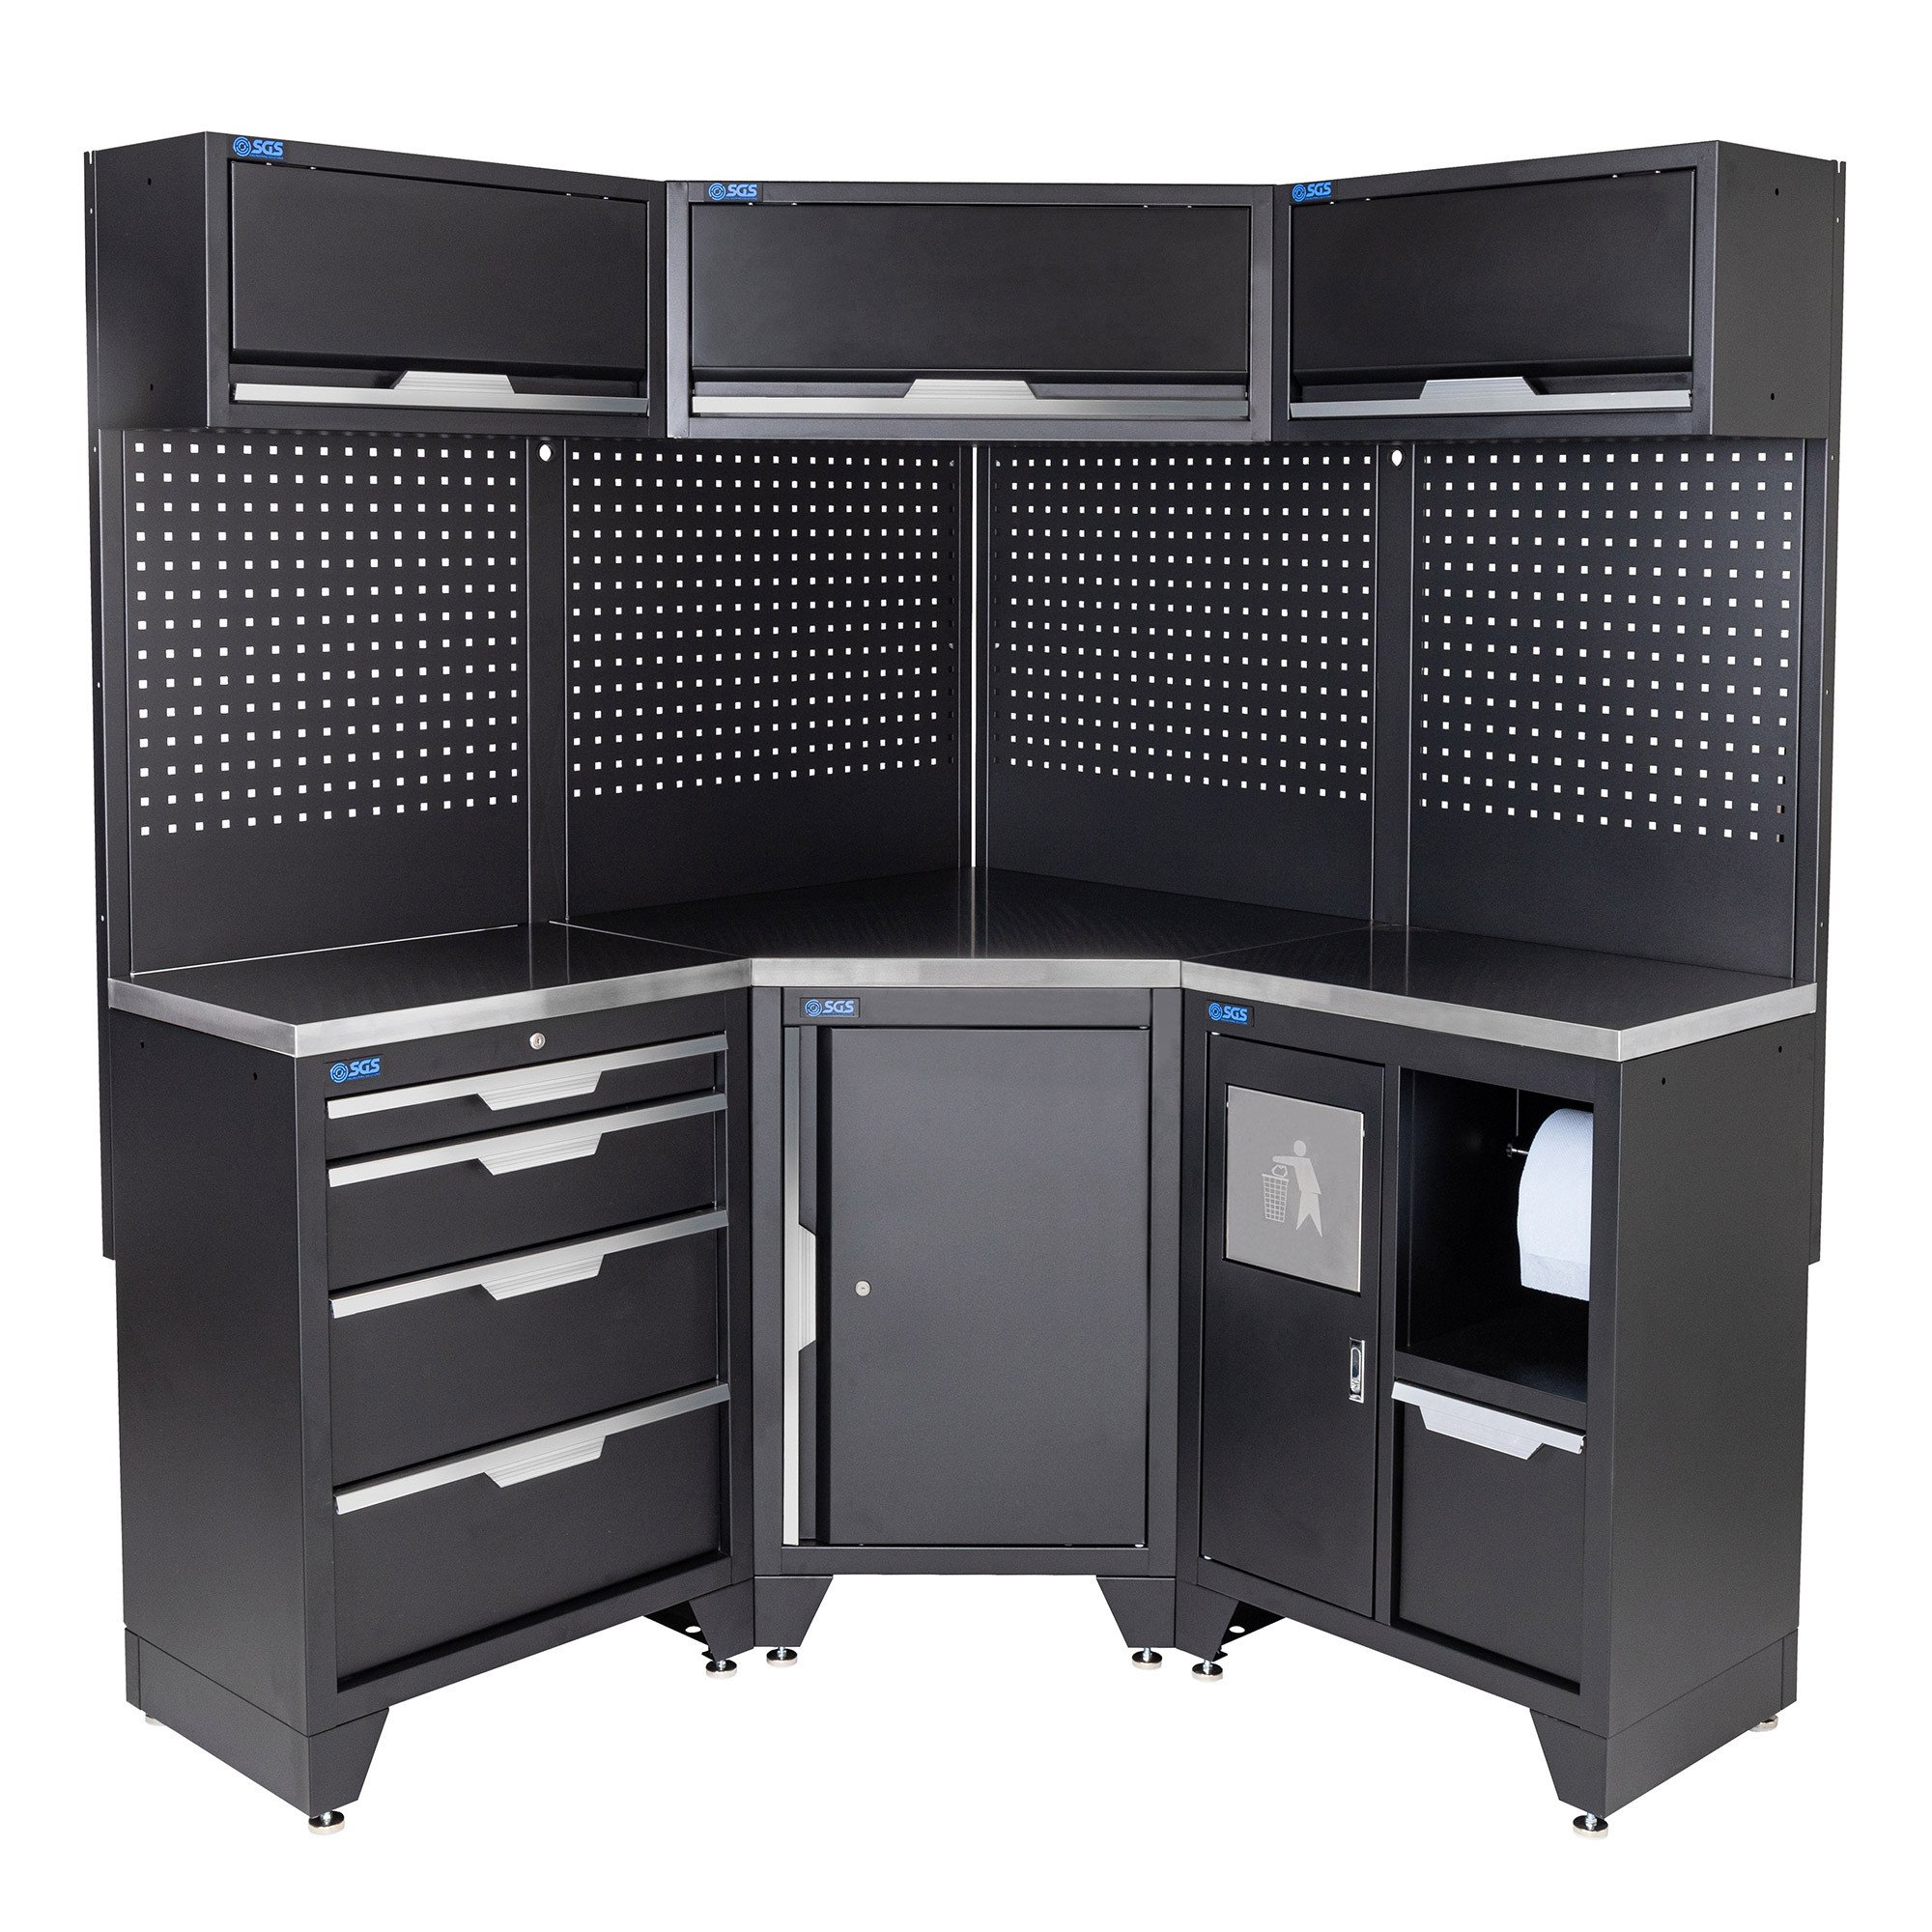 SGS车库存储系统10PC角落设置 - 不锈钢工作台和垃圾箱单元